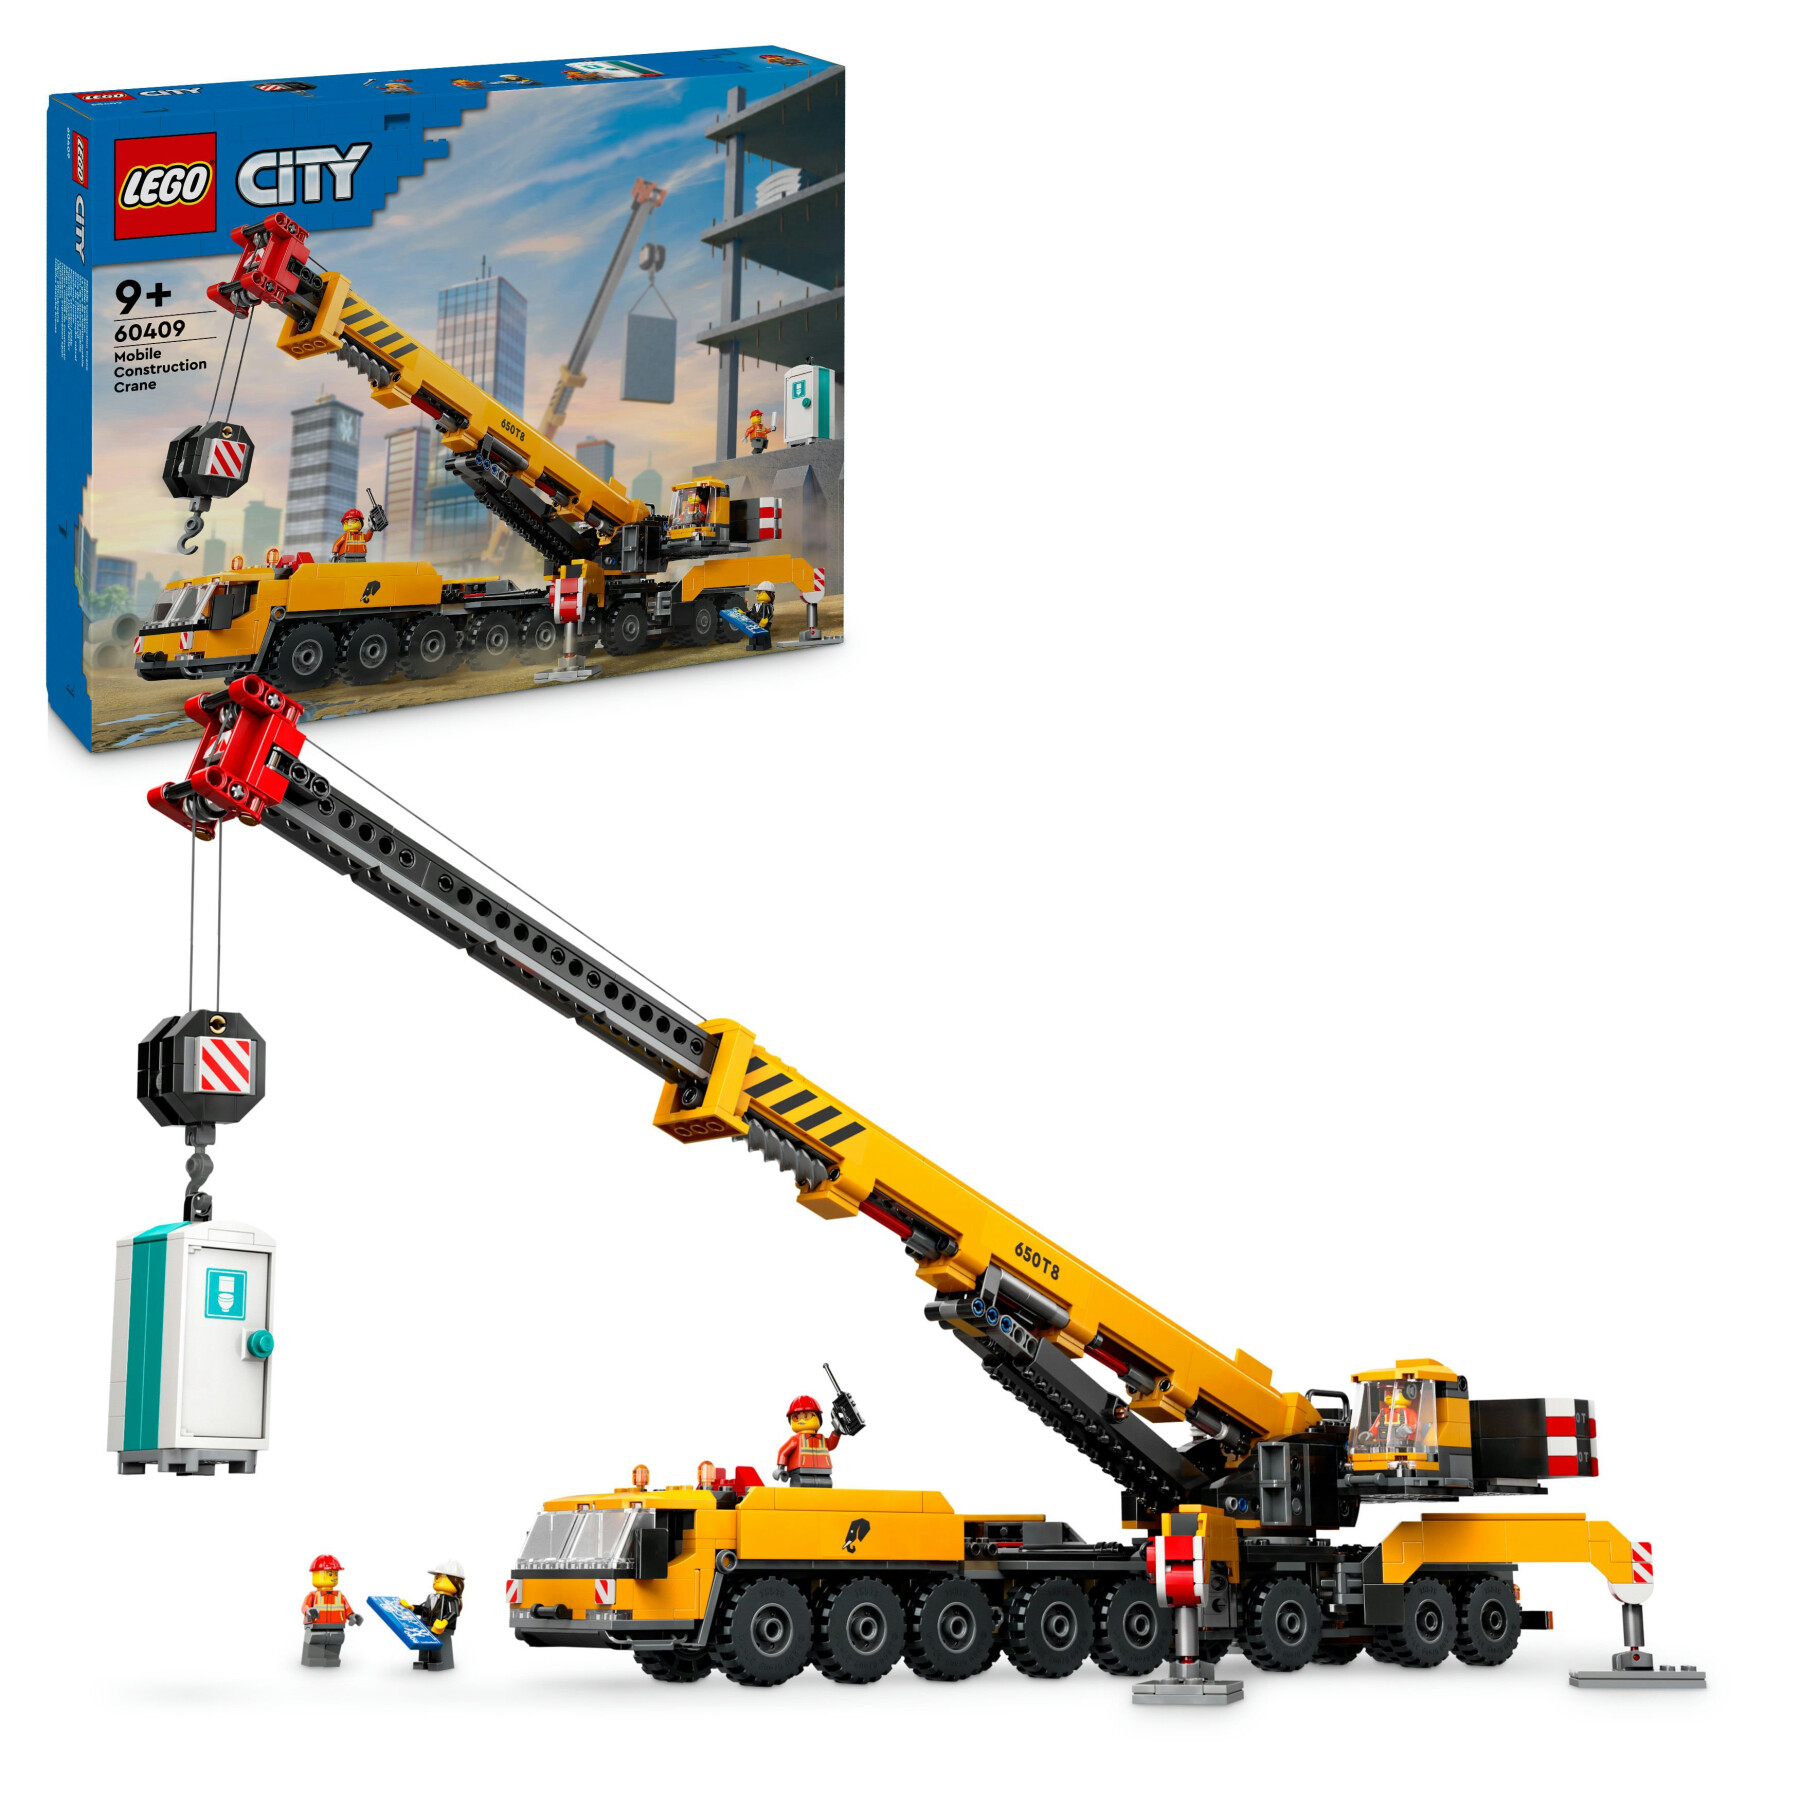 Lego city 60409 gru da cantiere mobile gialla, giochi creativi per bambini 9+, veicolo giocattolo con funzioni e 4 minifigure - LEGO CITY